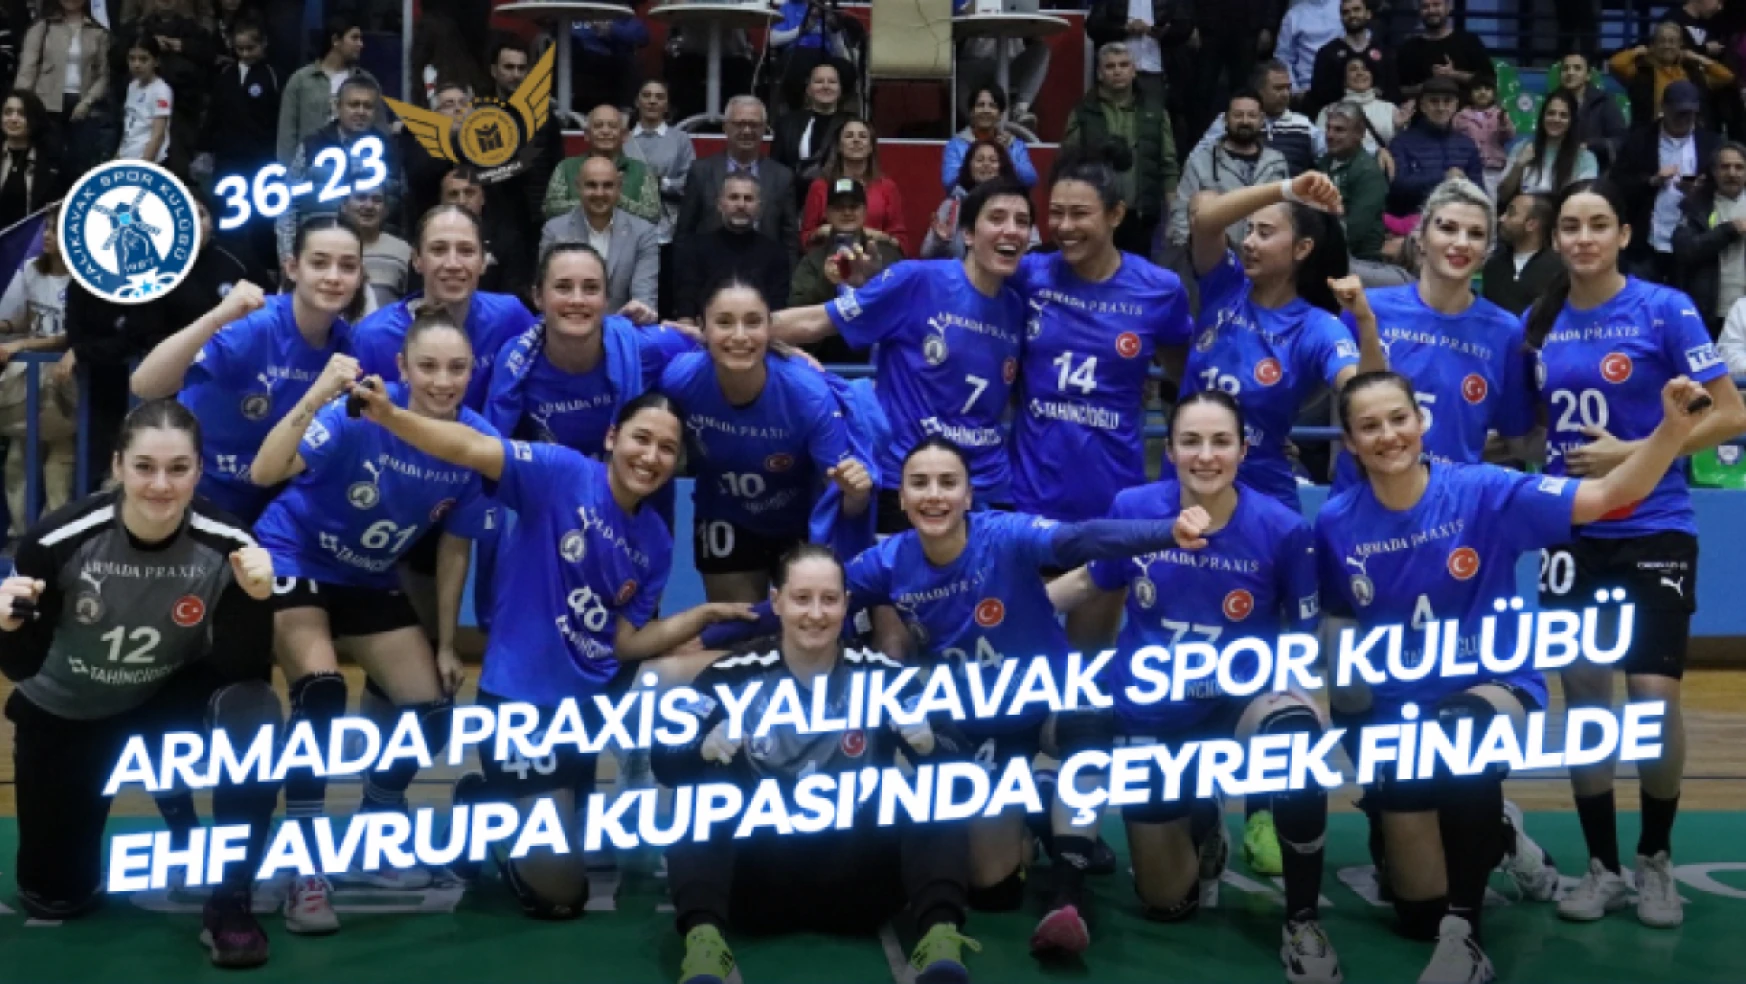 Armada Praxis Yalıkavak Spor Kulübü, EHF Avrupa Kupası'nda Çeyrek Finalde!